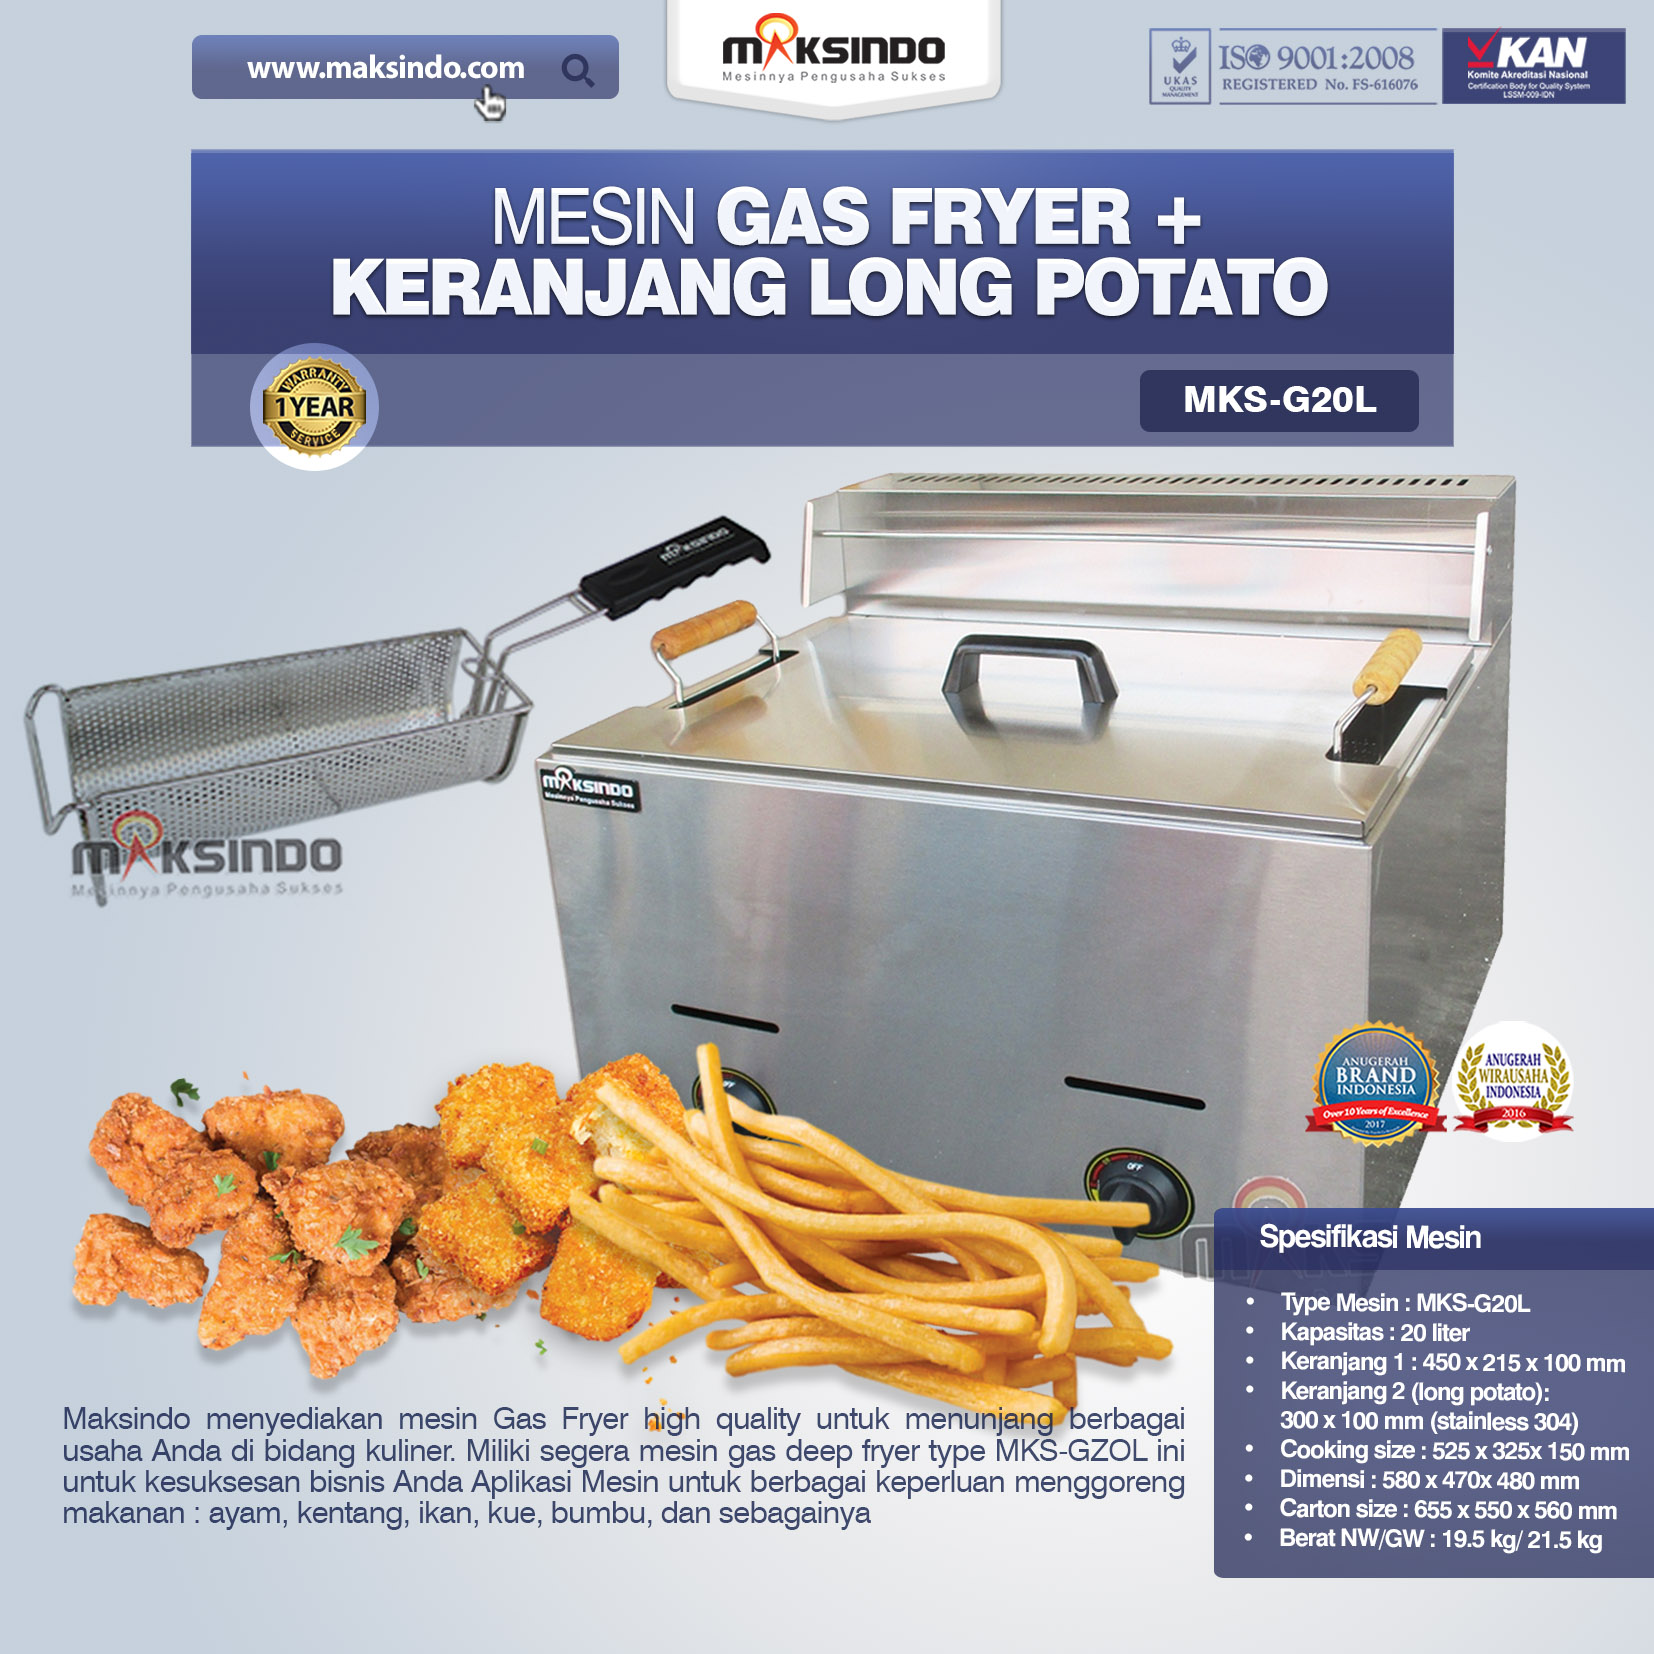 Jual Mesin Gas Fryer MKS-G20L + Keranjang di Banjarmasin